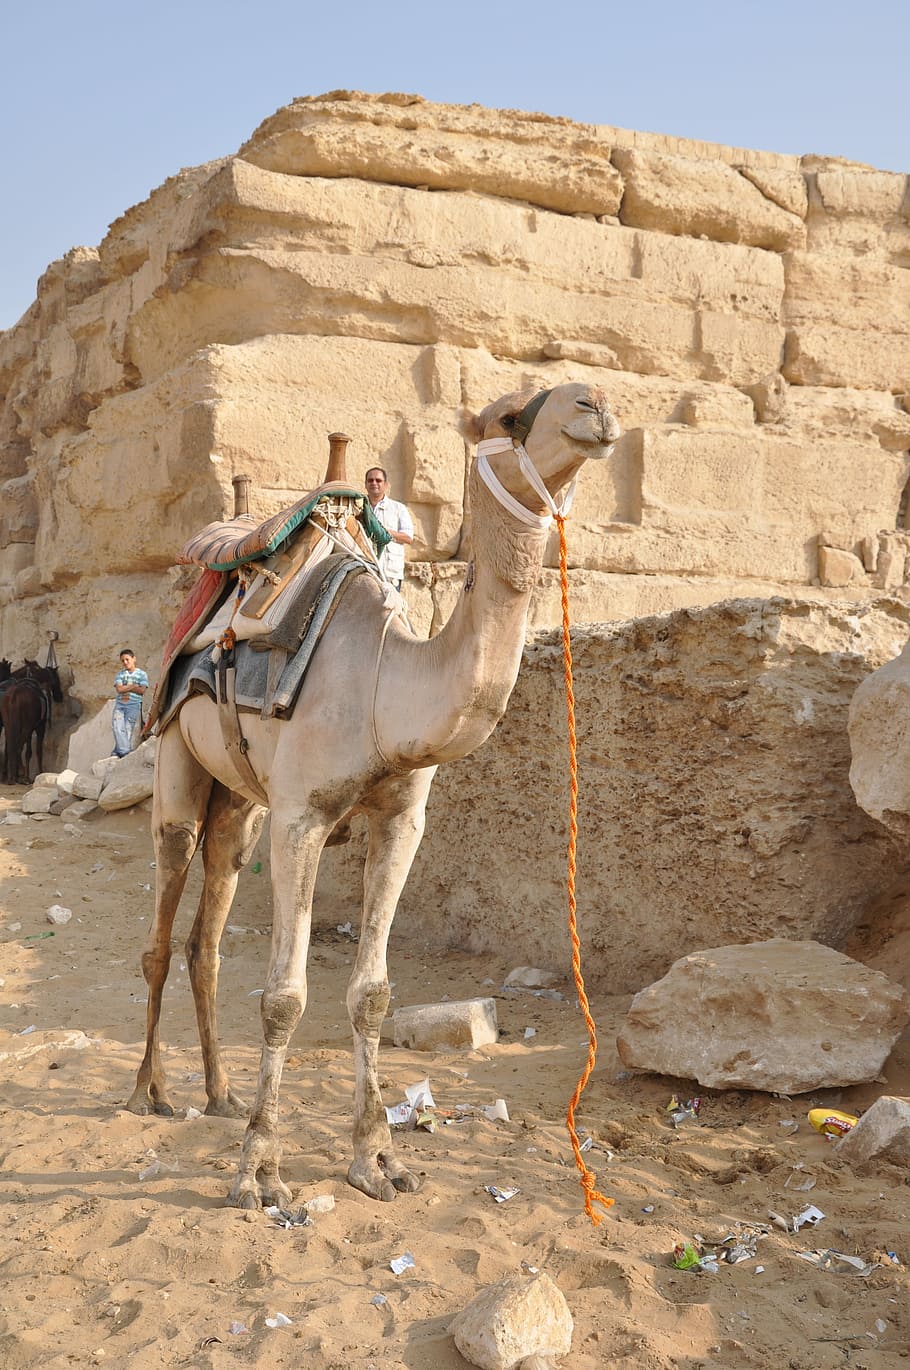 Camel, Dromedary, Egypt, Pyramids, tourist, giza, temple, hieroglyphs, nile, pharaoh